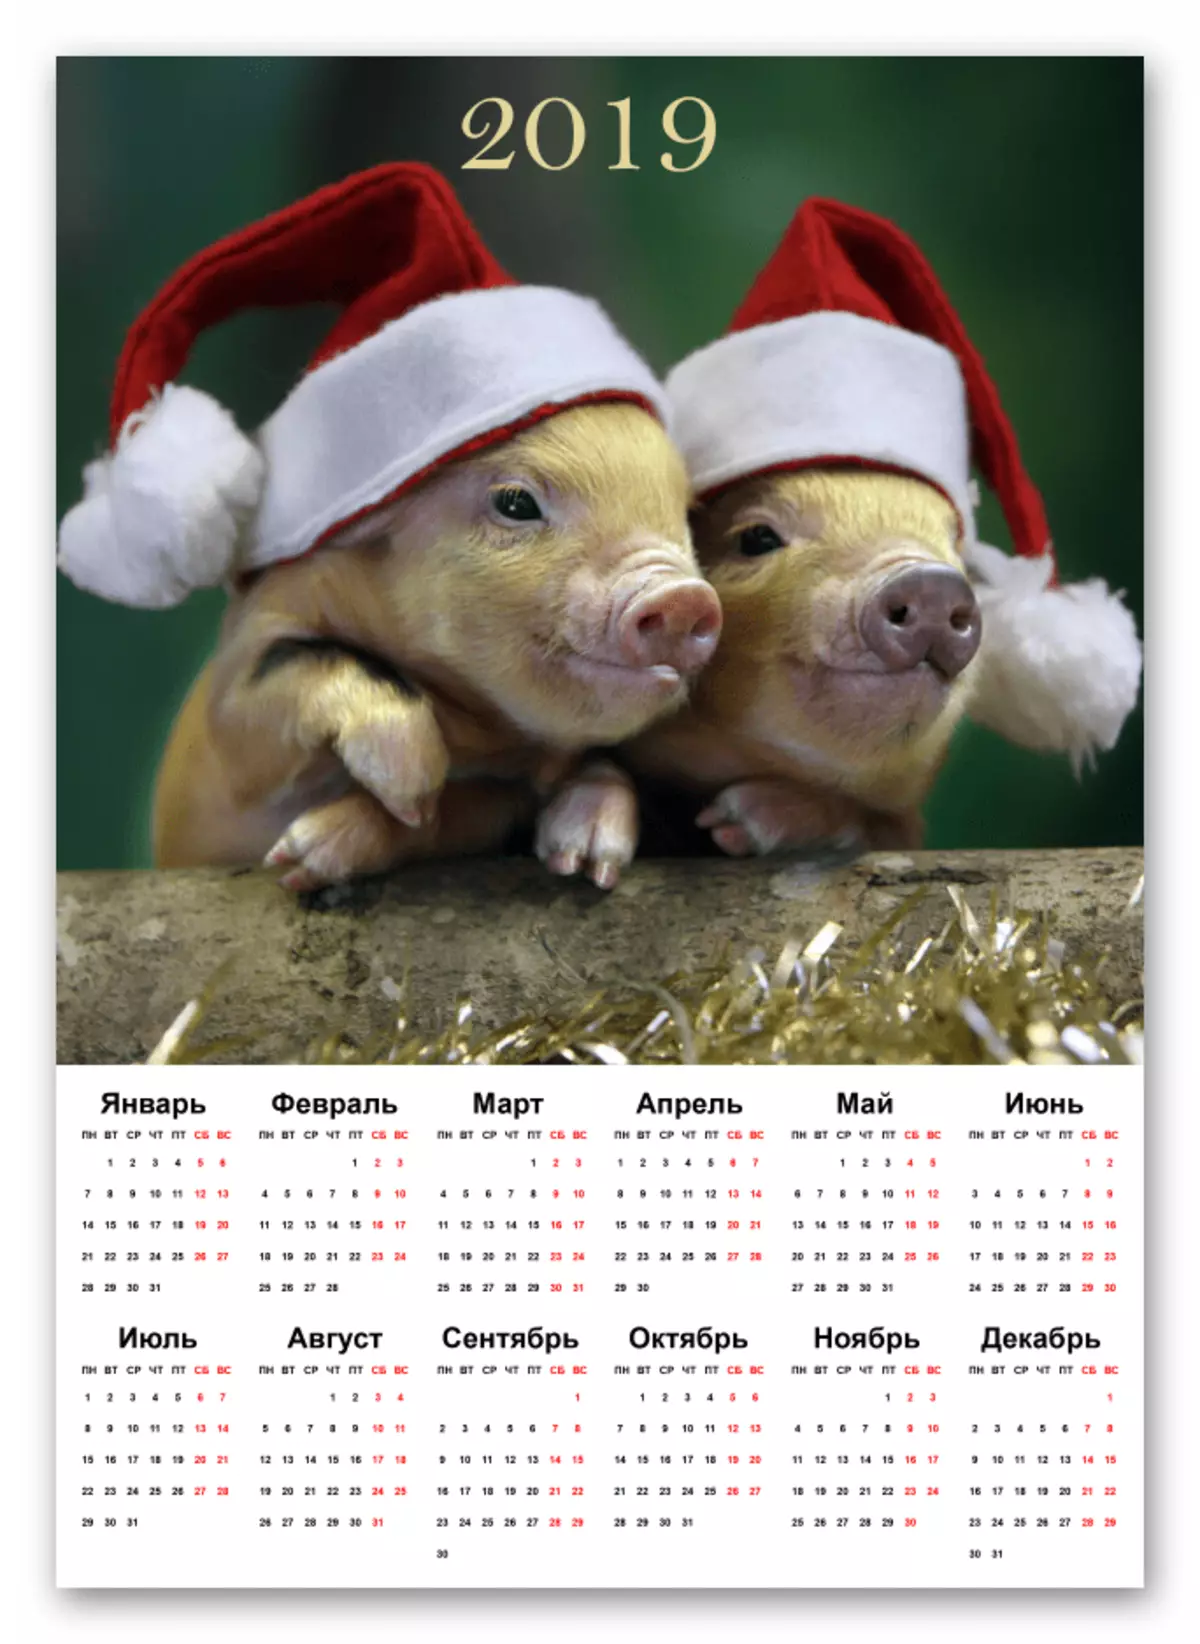 Encama dawîn a afirandina salnameyê li Photoshop